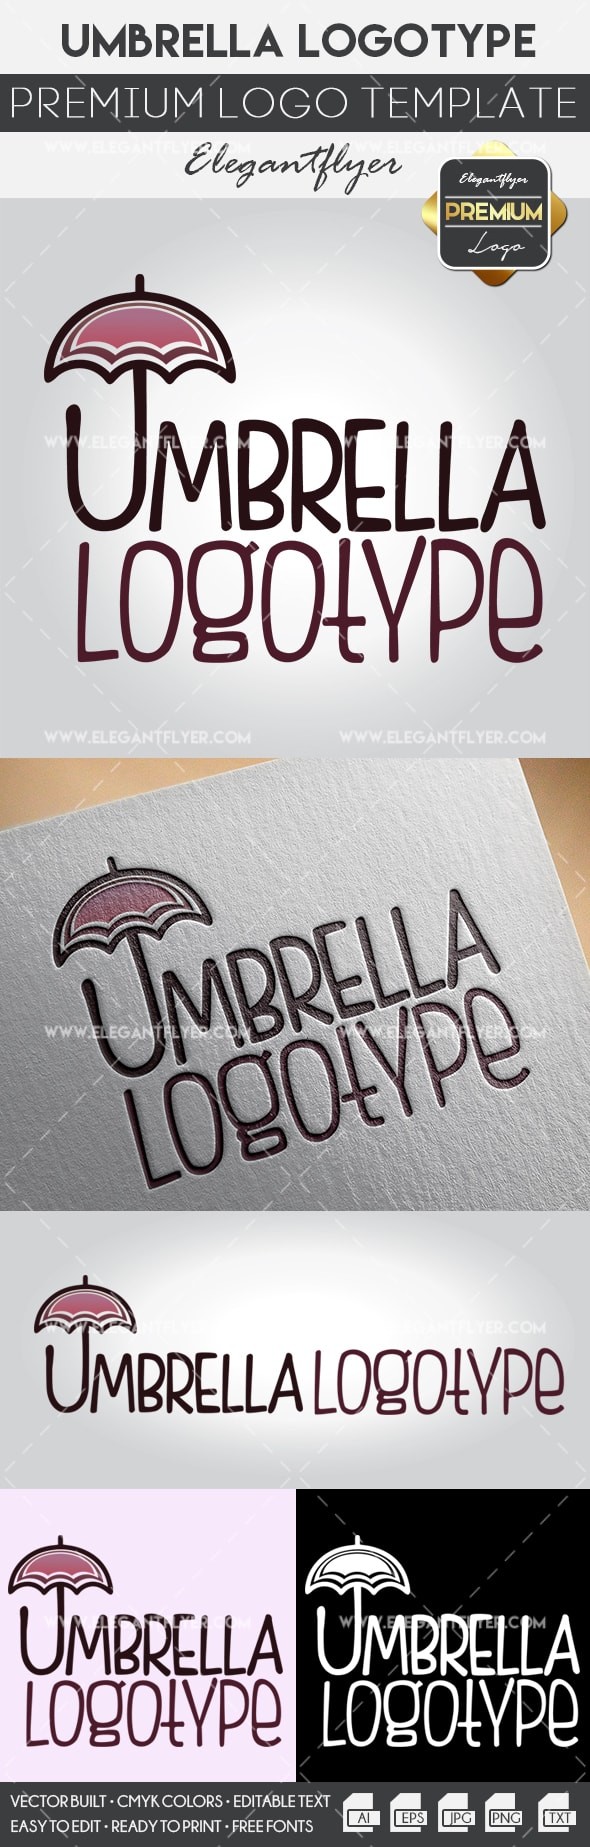 Guarda-chuva by ElegantFlyer